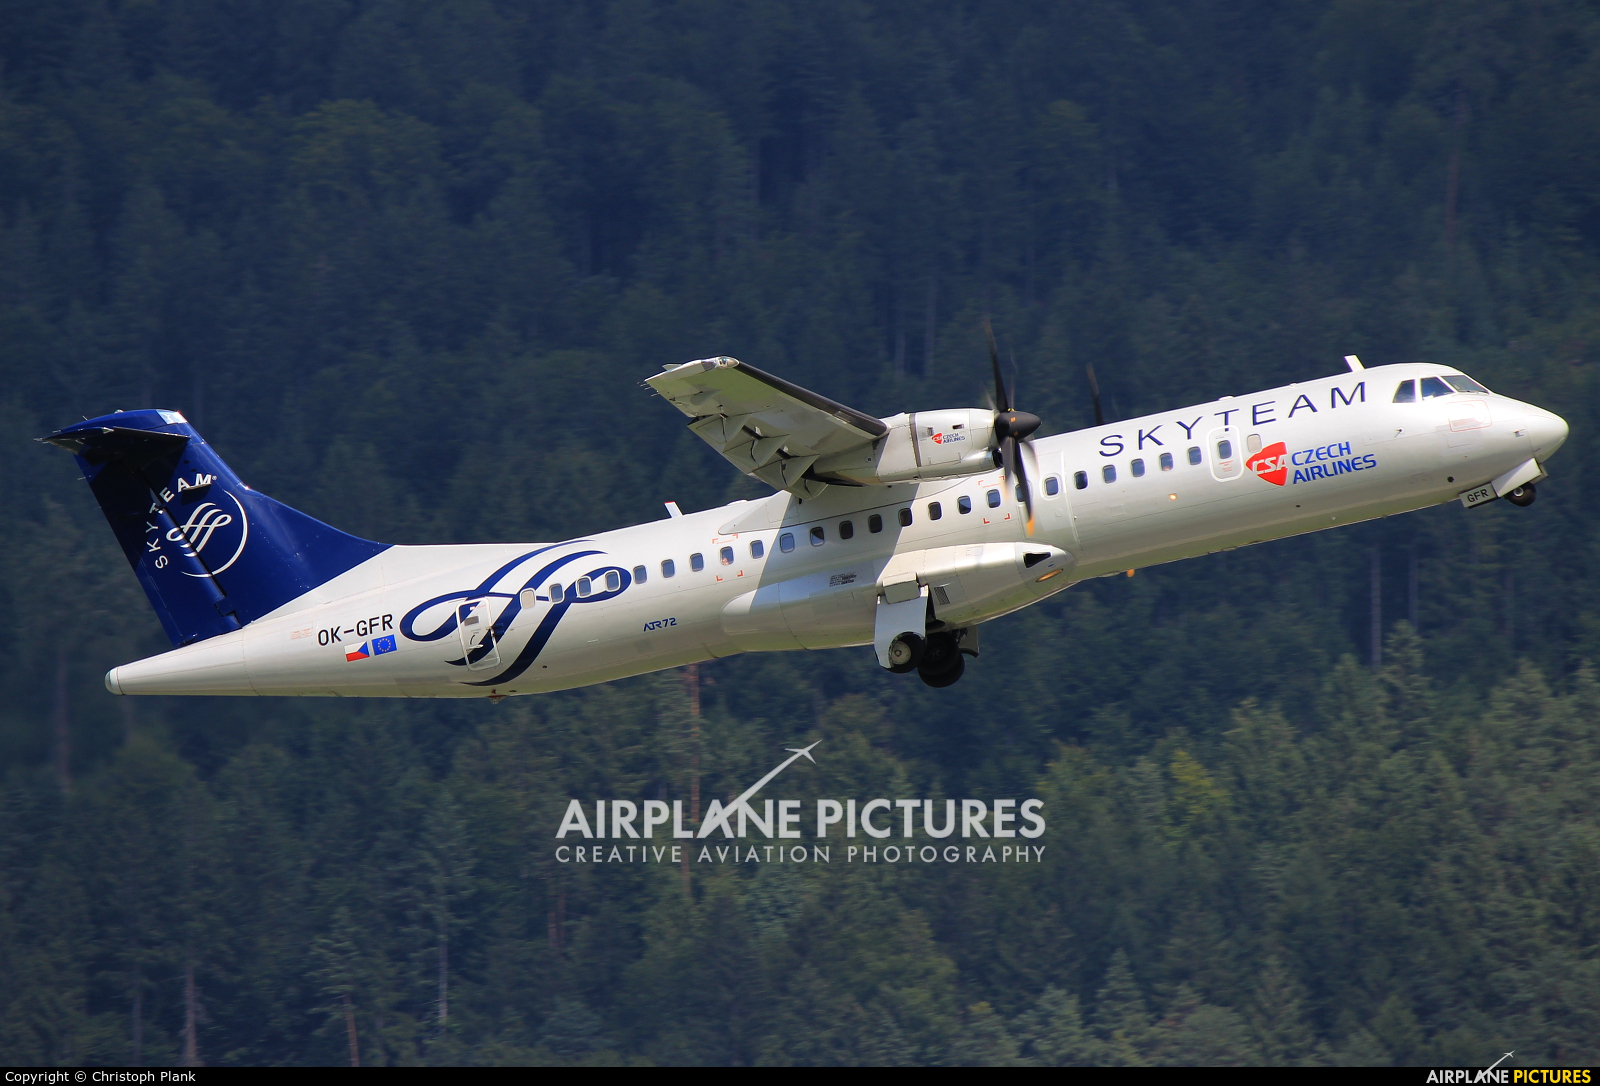 CSA - Czech Airlines OK-GFR aircraft at Innsbruck